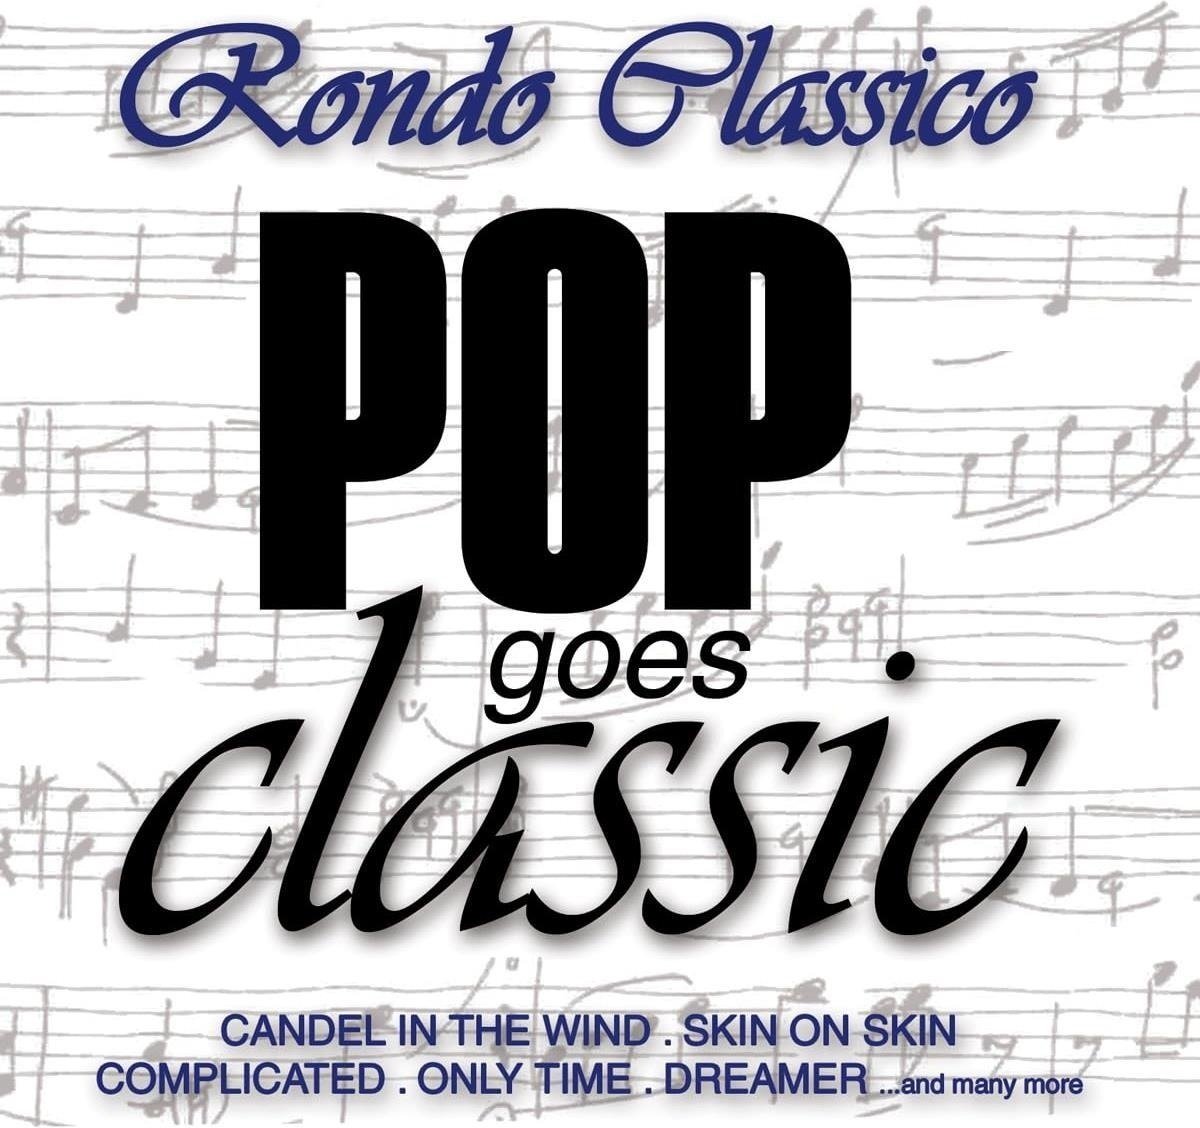 CD Shop - RONDO CLASSICO POP MEETS CLASSIC